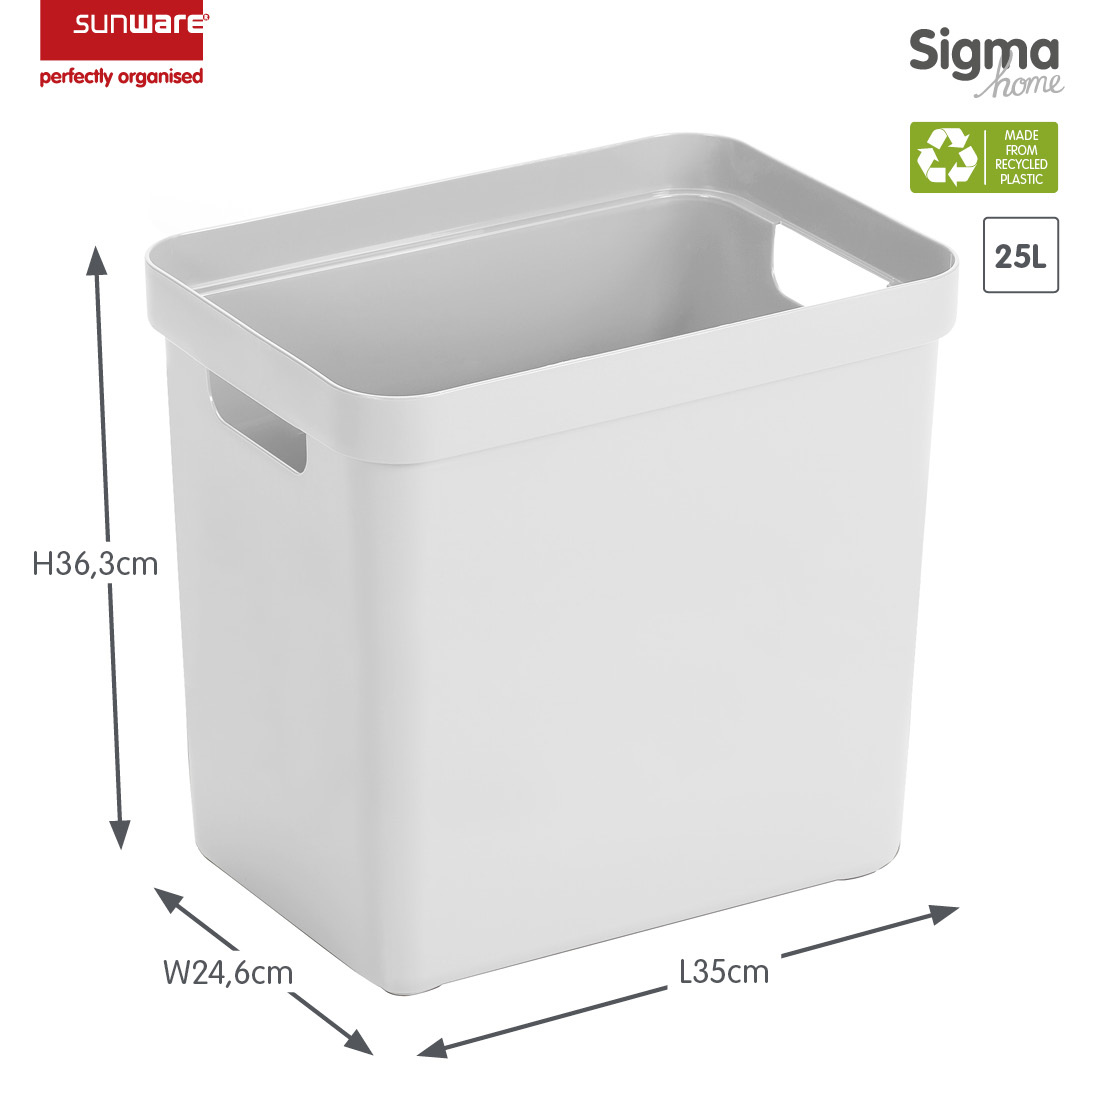 Sigma home Aufbewahrungsbox 25L weiß